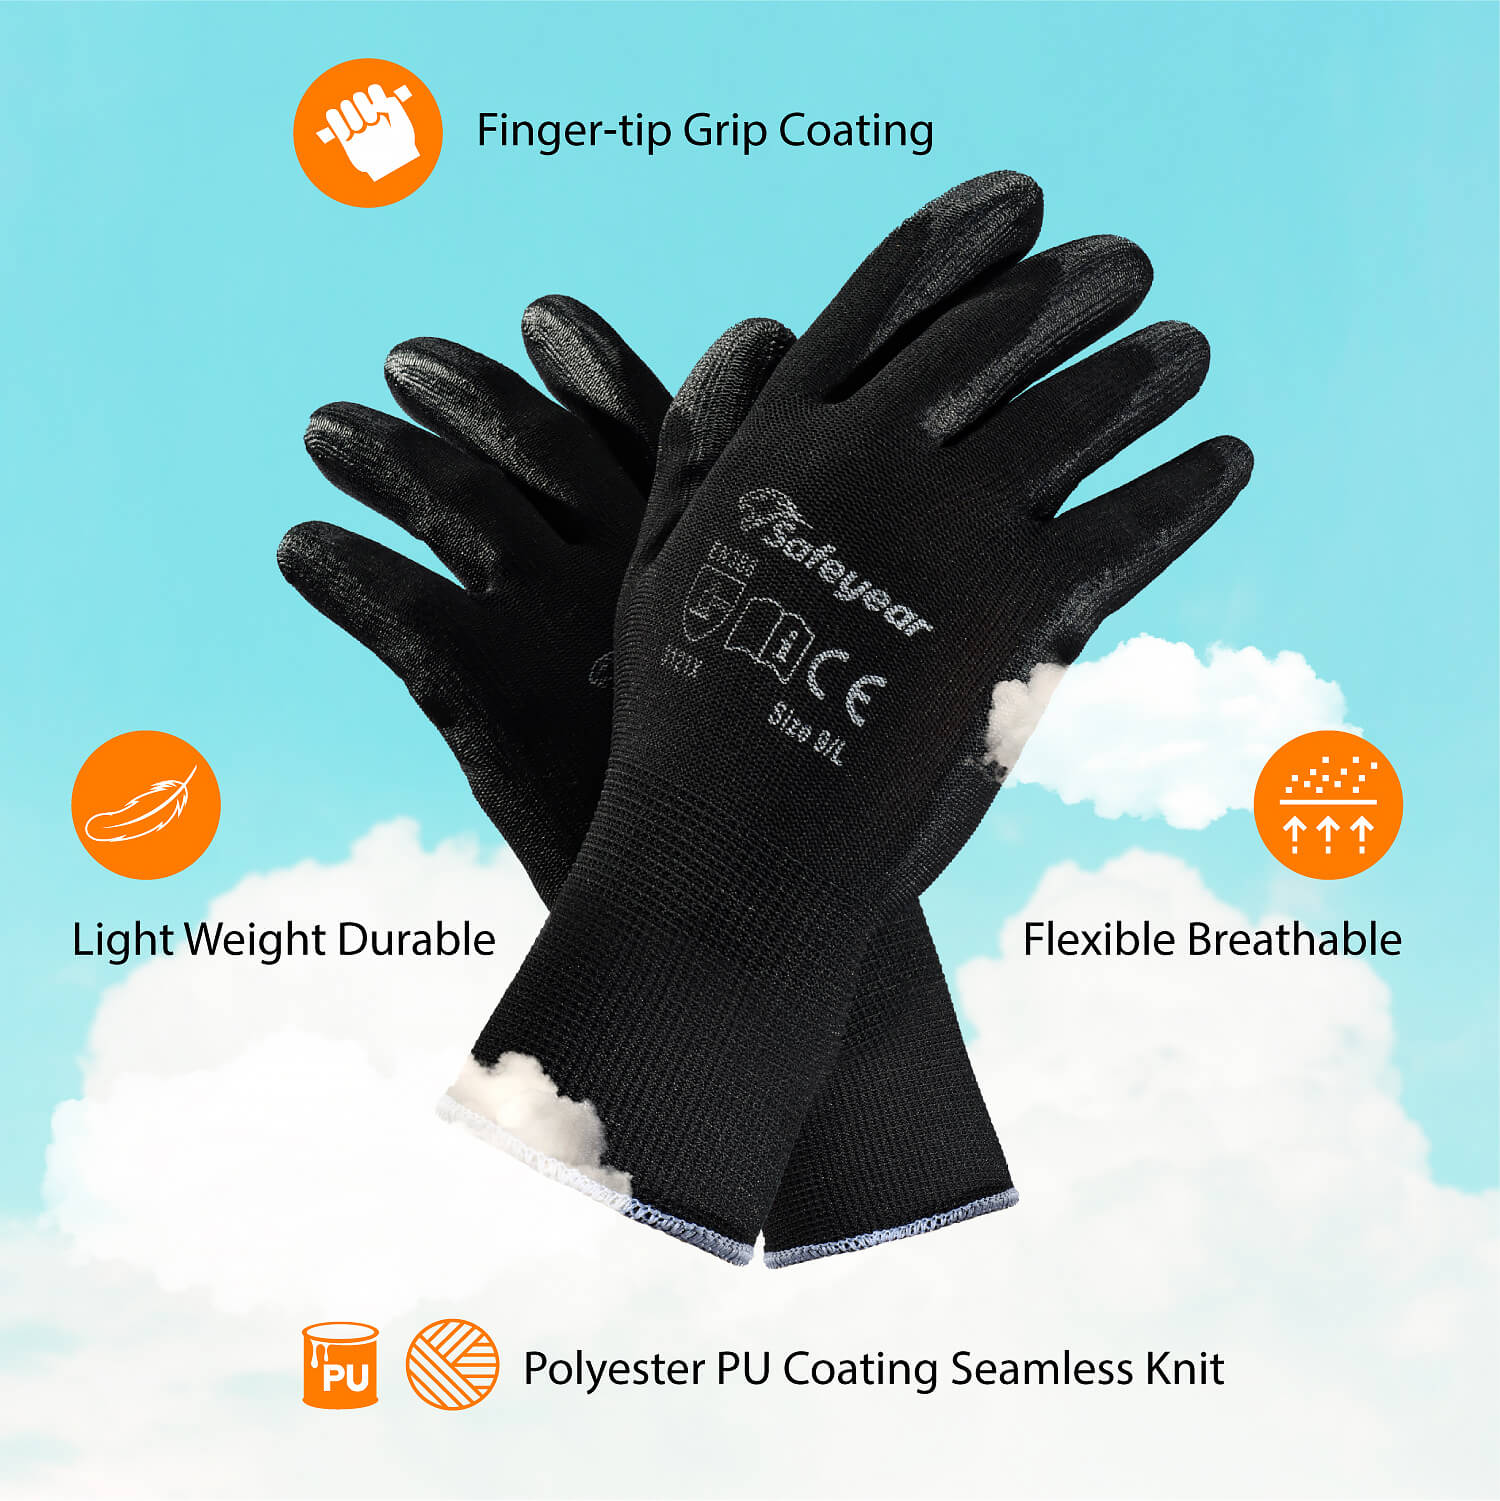 Защитные рабочие перчатки из полиуретана PN8003 